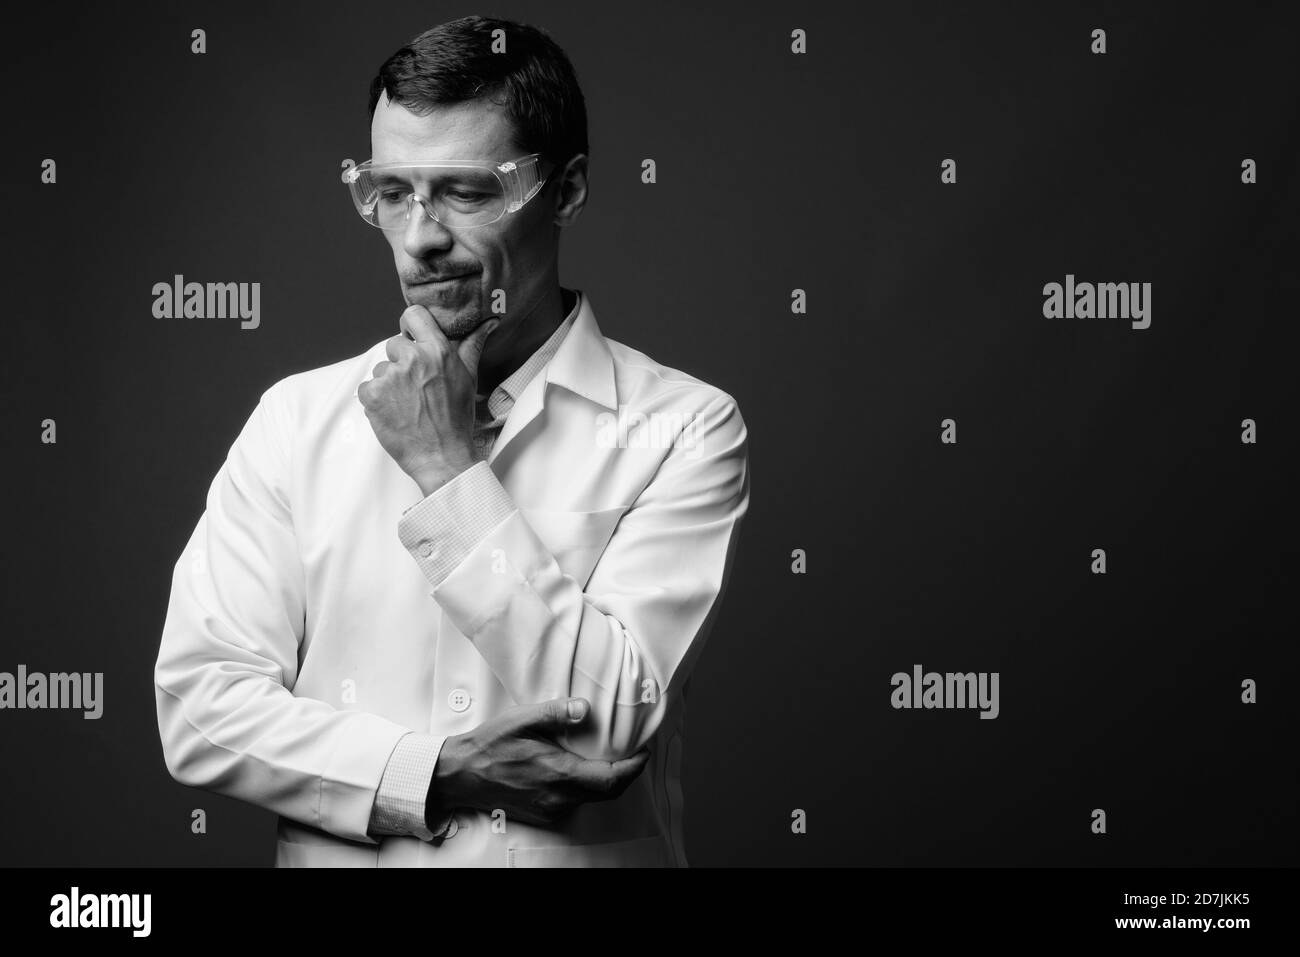 Portrait de l'homme beau médecin comme scientifique avec des lunettes de protection Banque D'Images